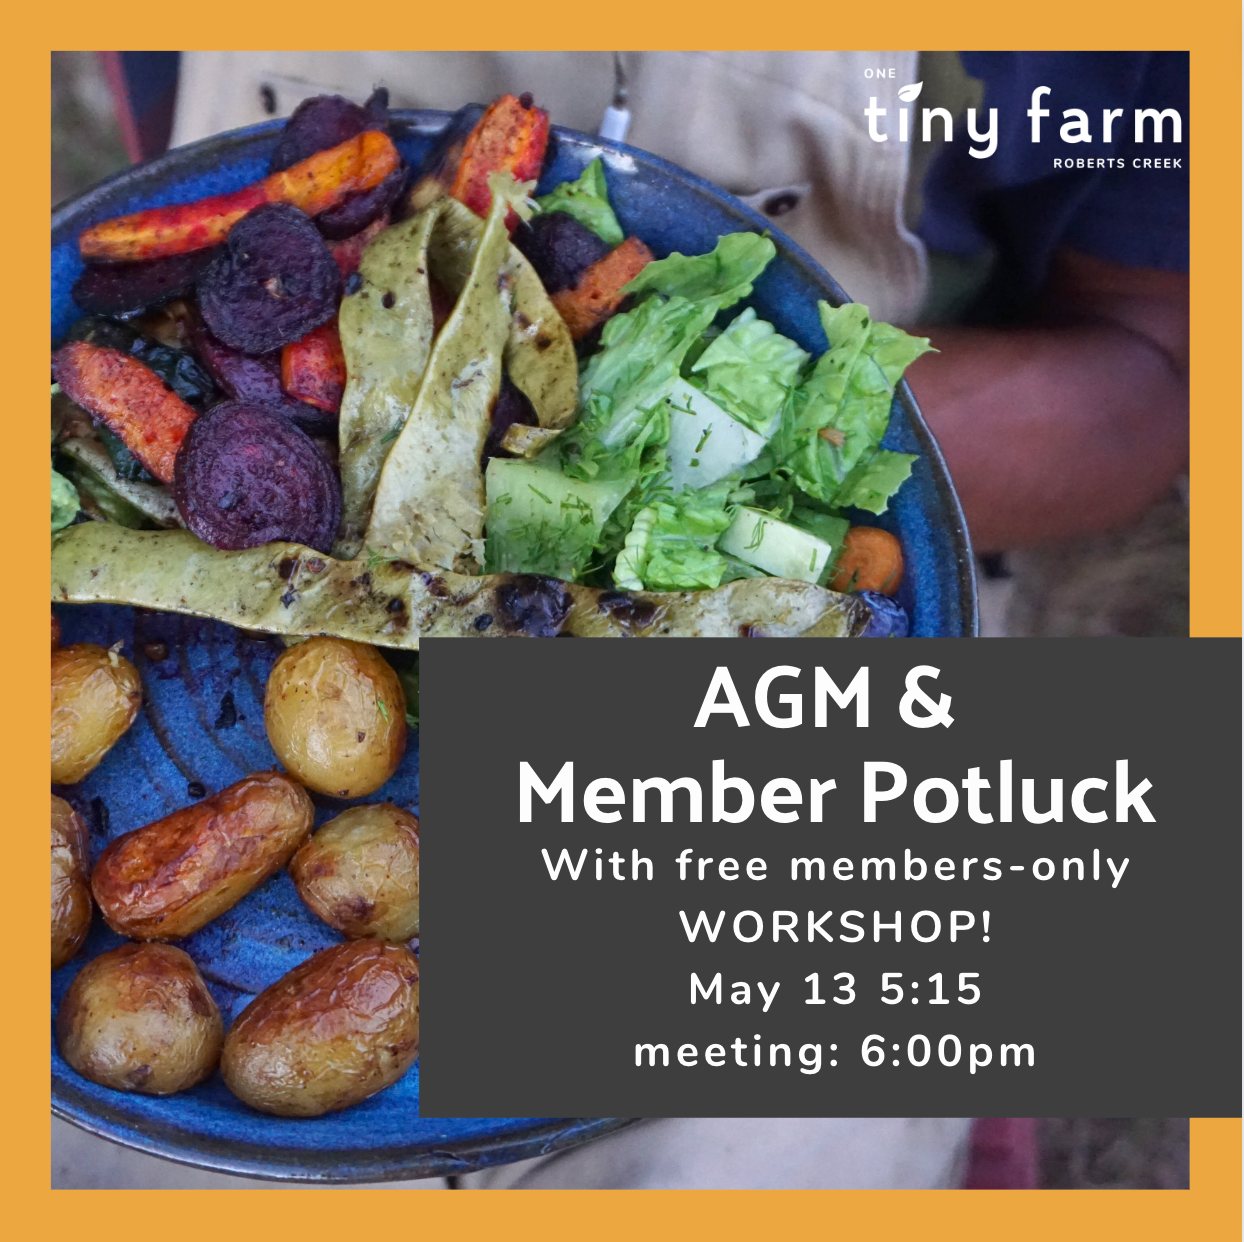 AGM & Member Potluck, May 13 at 5:15, meeting at 6:00pm